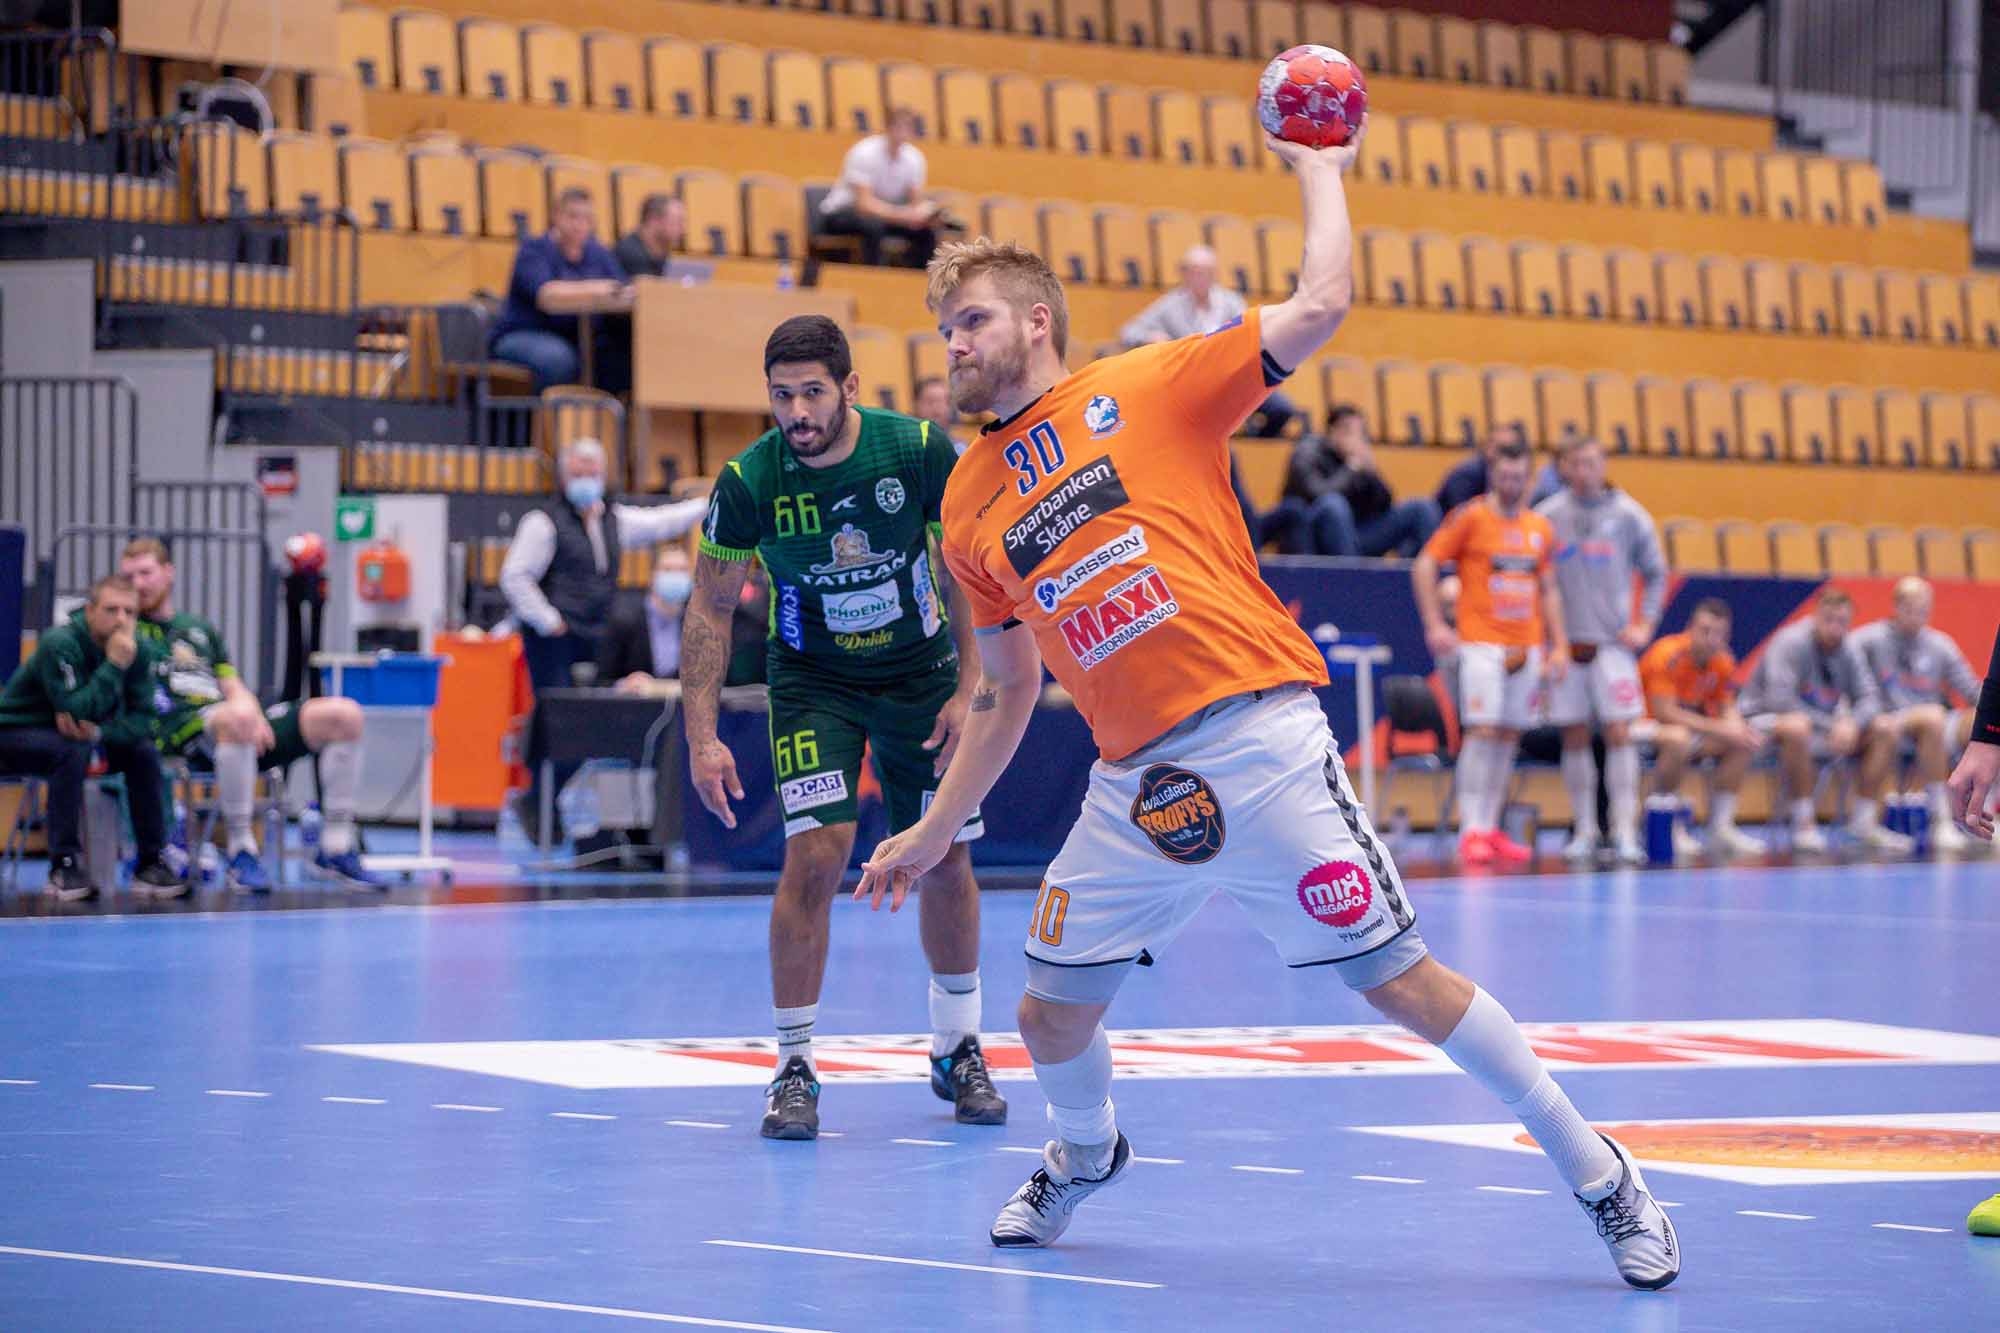 Kristianstad Handball